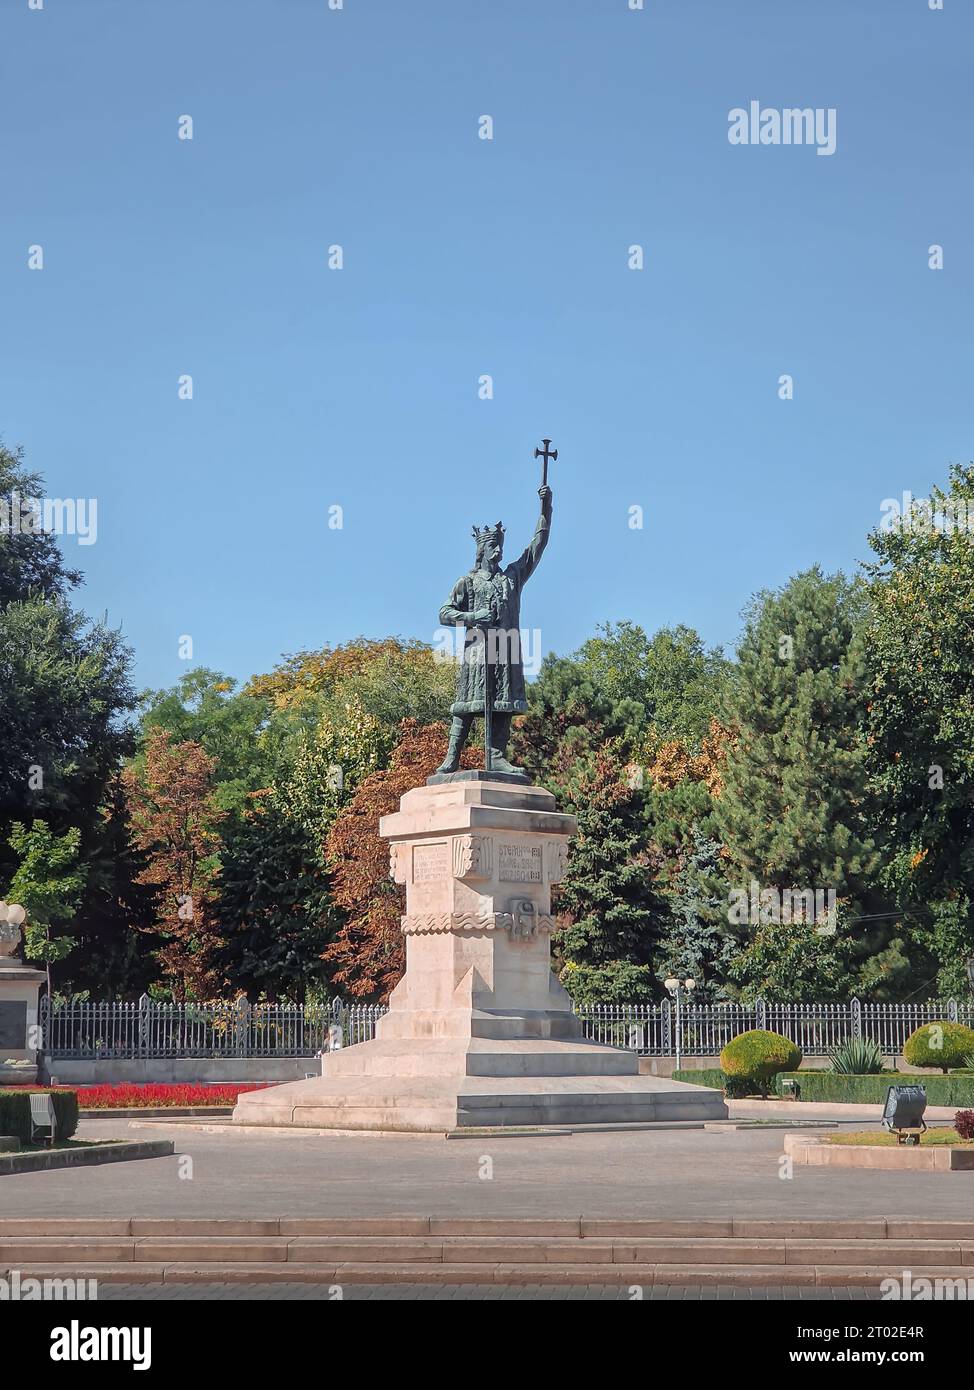 Stephen le Grand monument (statue de Stefan cel Mare) en face du parc central dans une journée ensoleillée d'automne, ville de Chisinau, Moldavie Banque D'Images